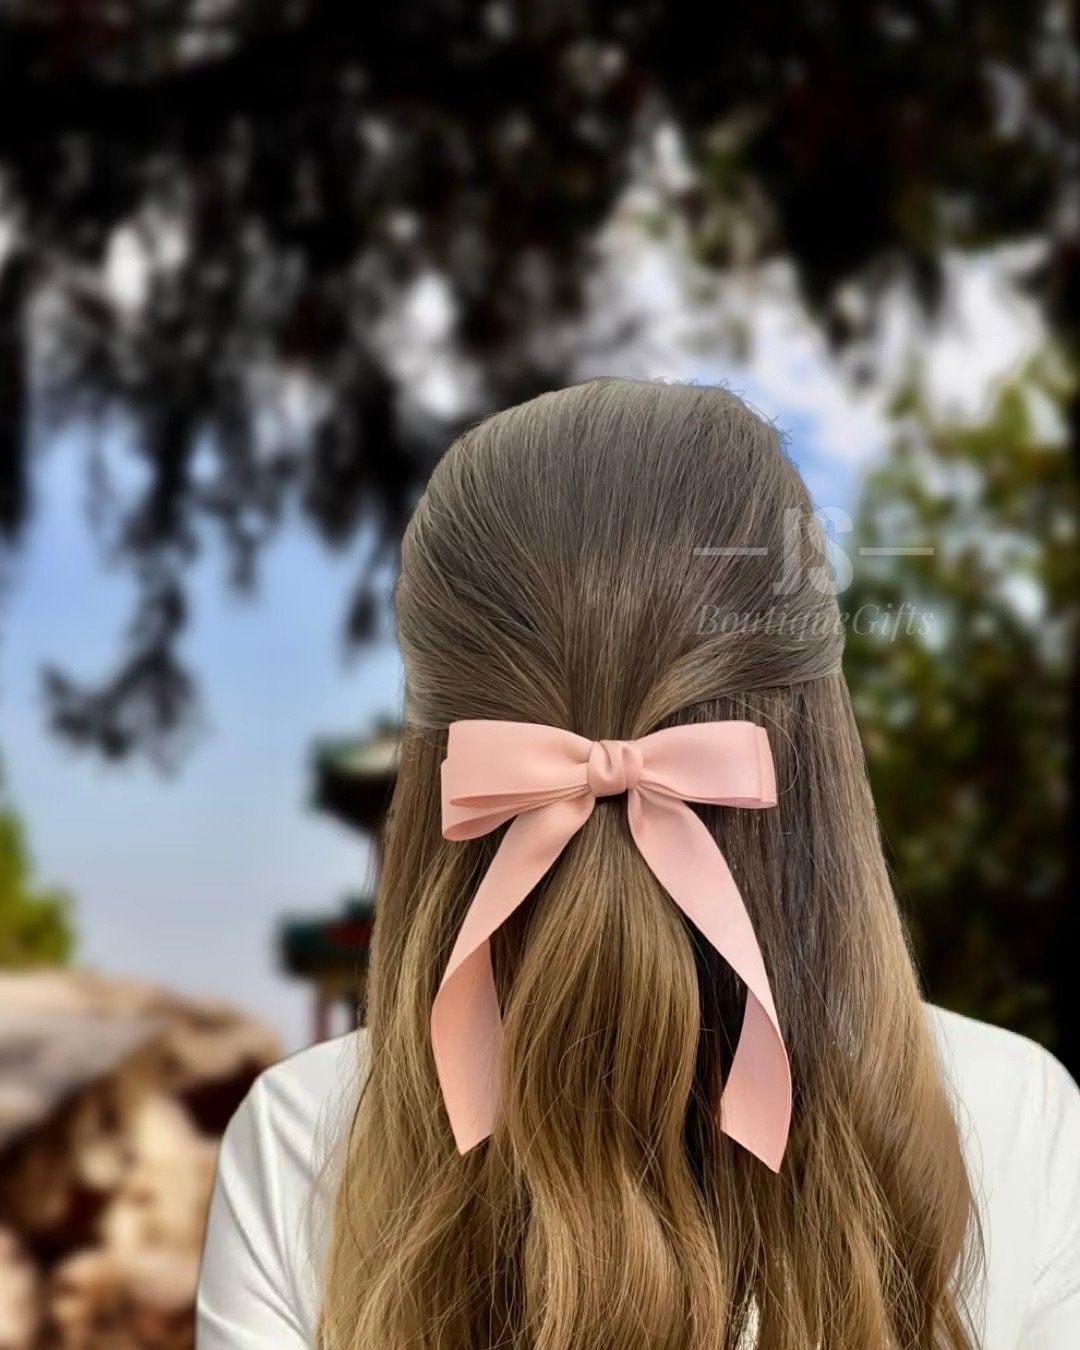 Hair Bows for Women Girls Velvet Hair Ribbon Black Bow Hair Clips